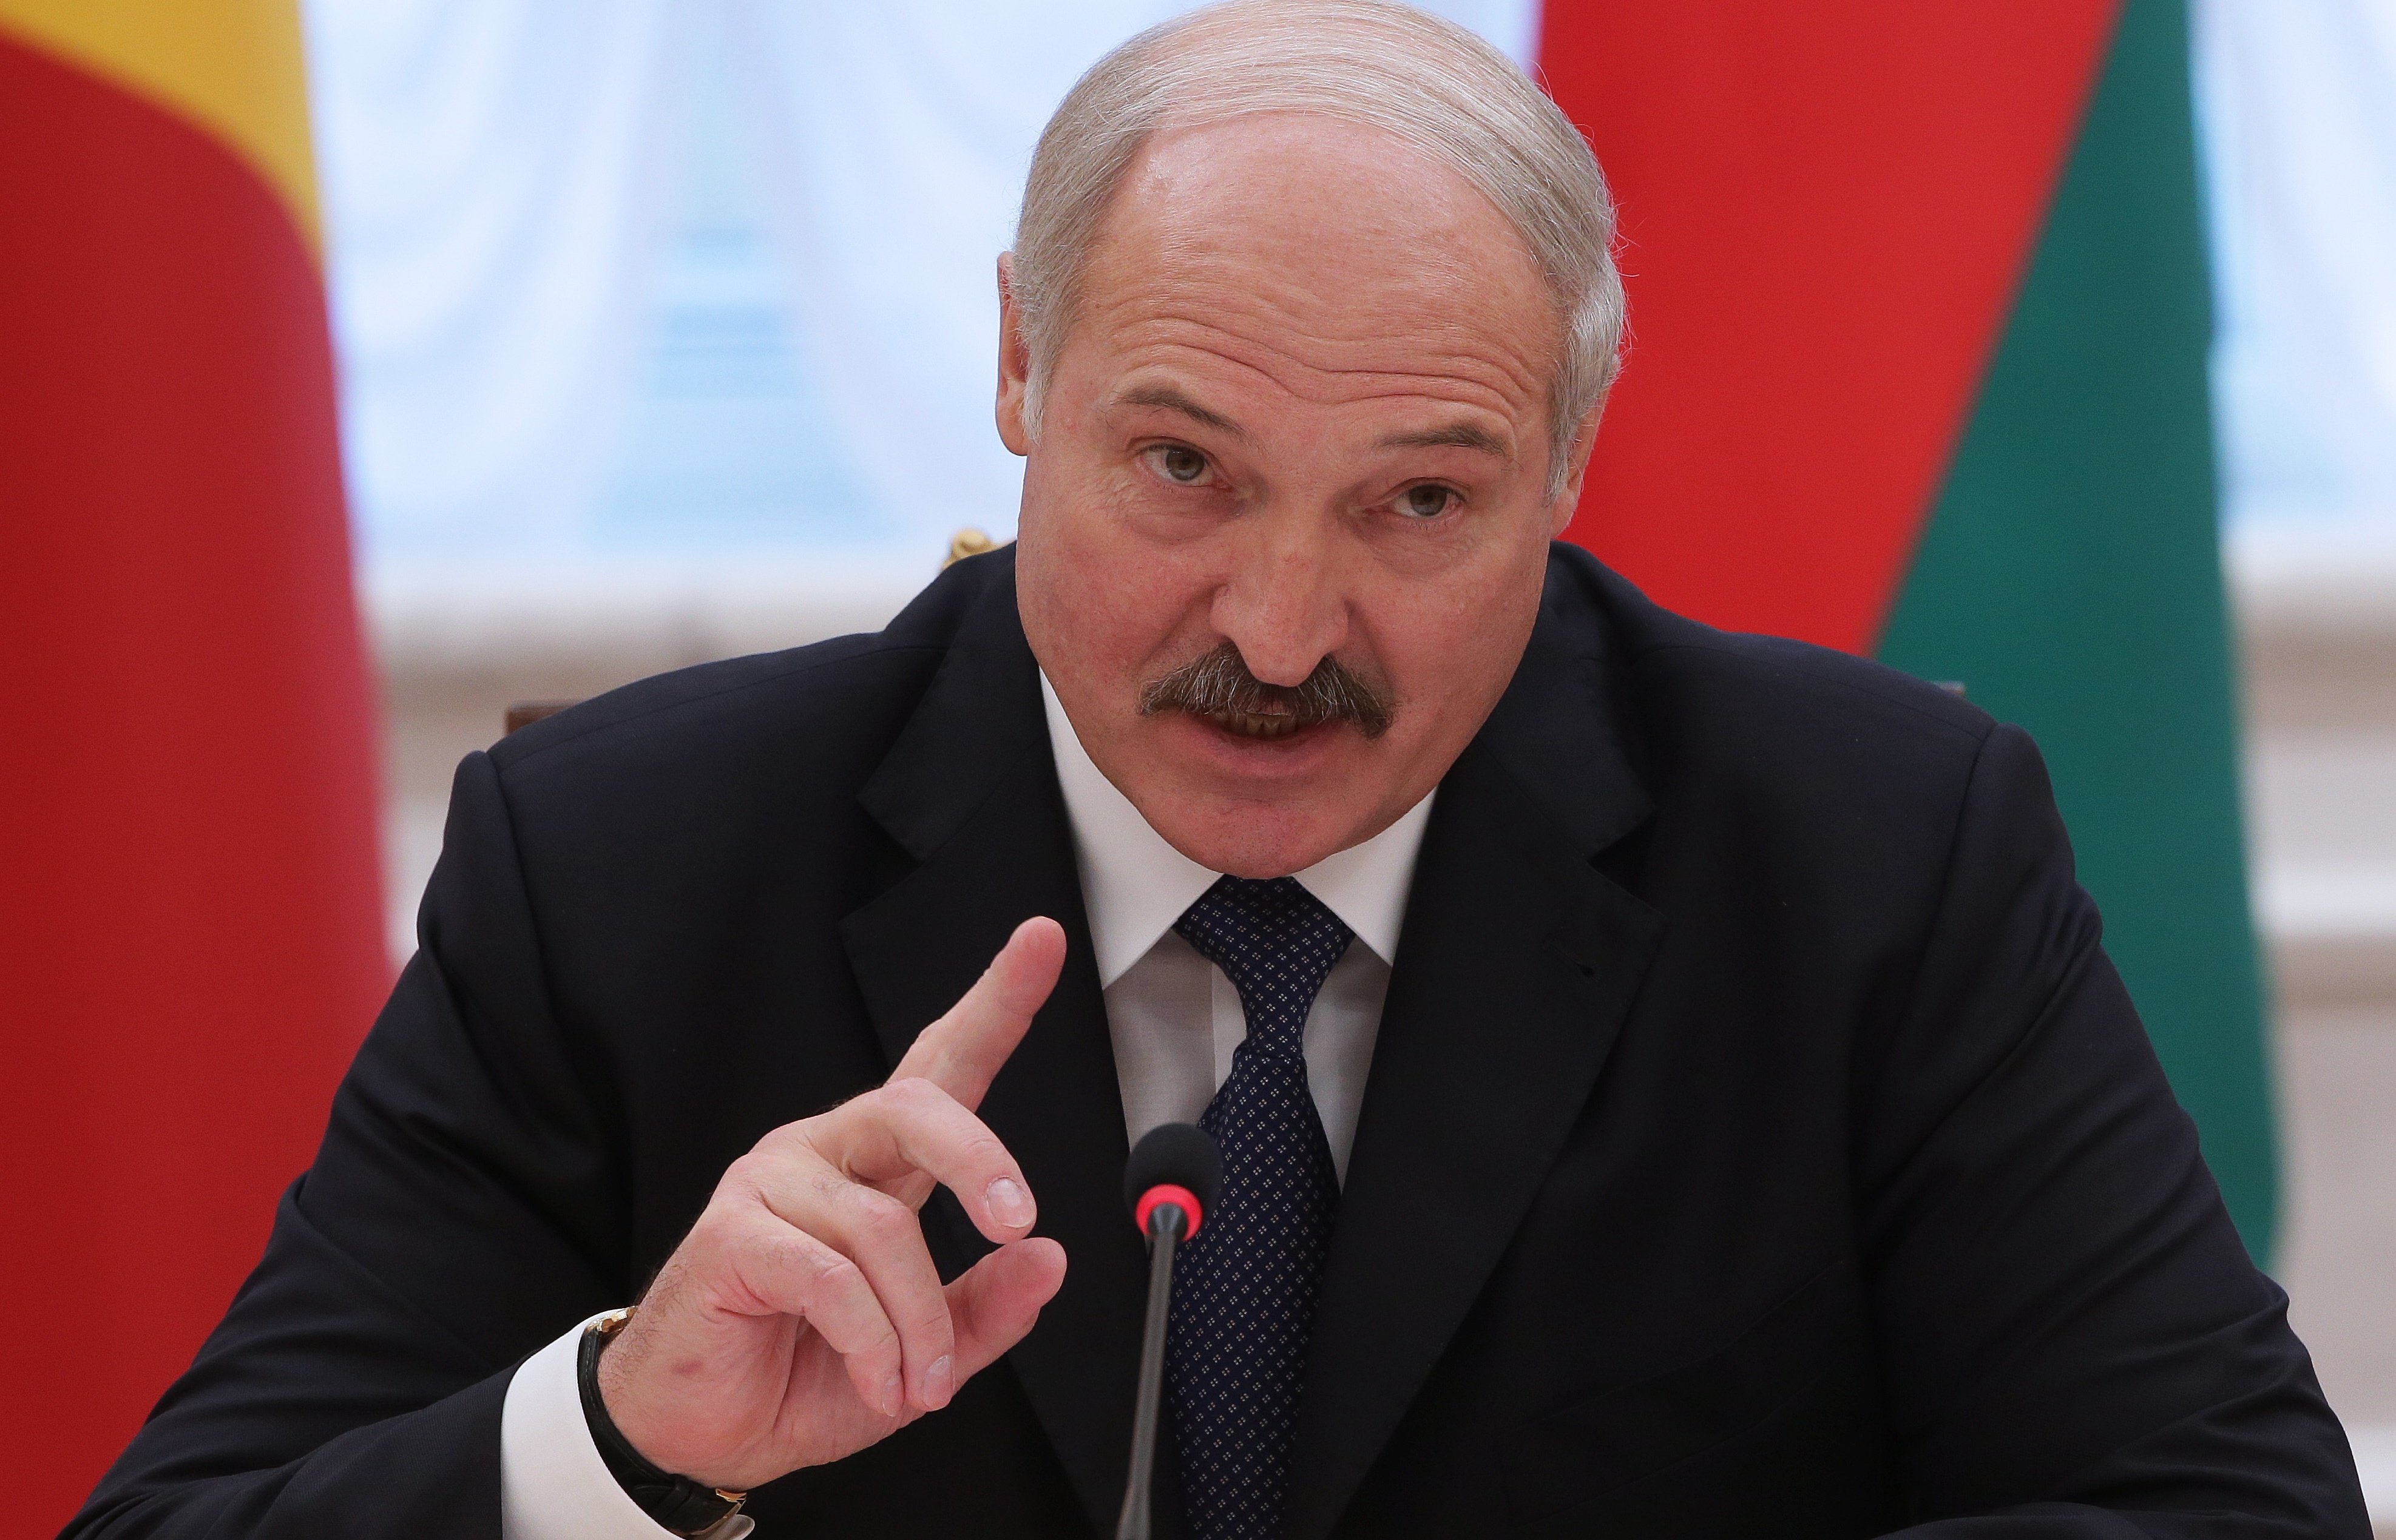 ABŞ-dan bircə zəng müharibəni bitirəcək - Lukaşenko